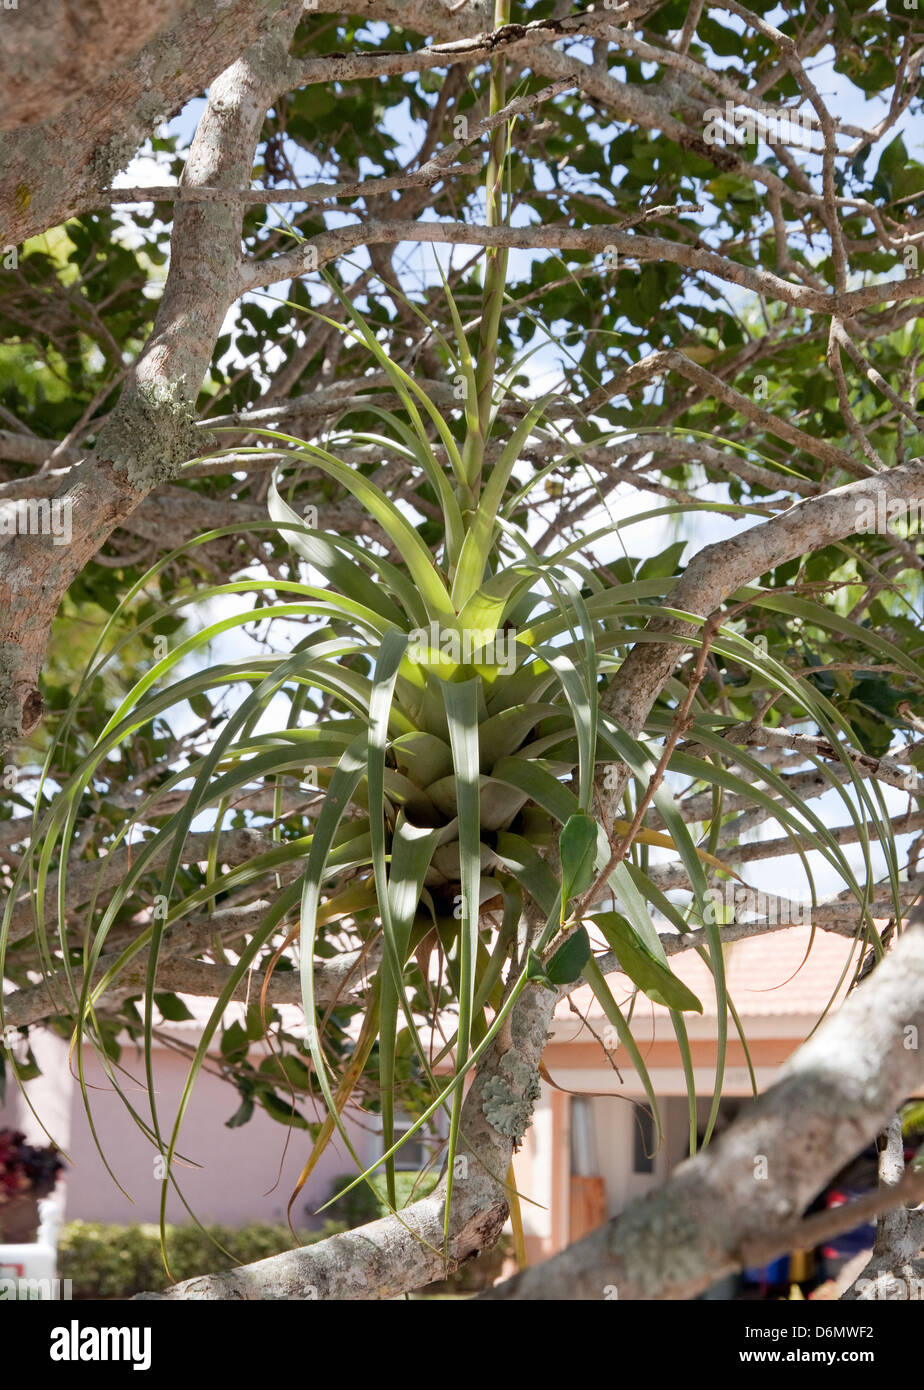 Tillandsia utriculata, plus grande usine de l'air dans la famille des broméliacées. Un épiphyte qui vit sur un arbre hôte, n'exige pas de sol. Le sud de la Floride. Banque D'Images